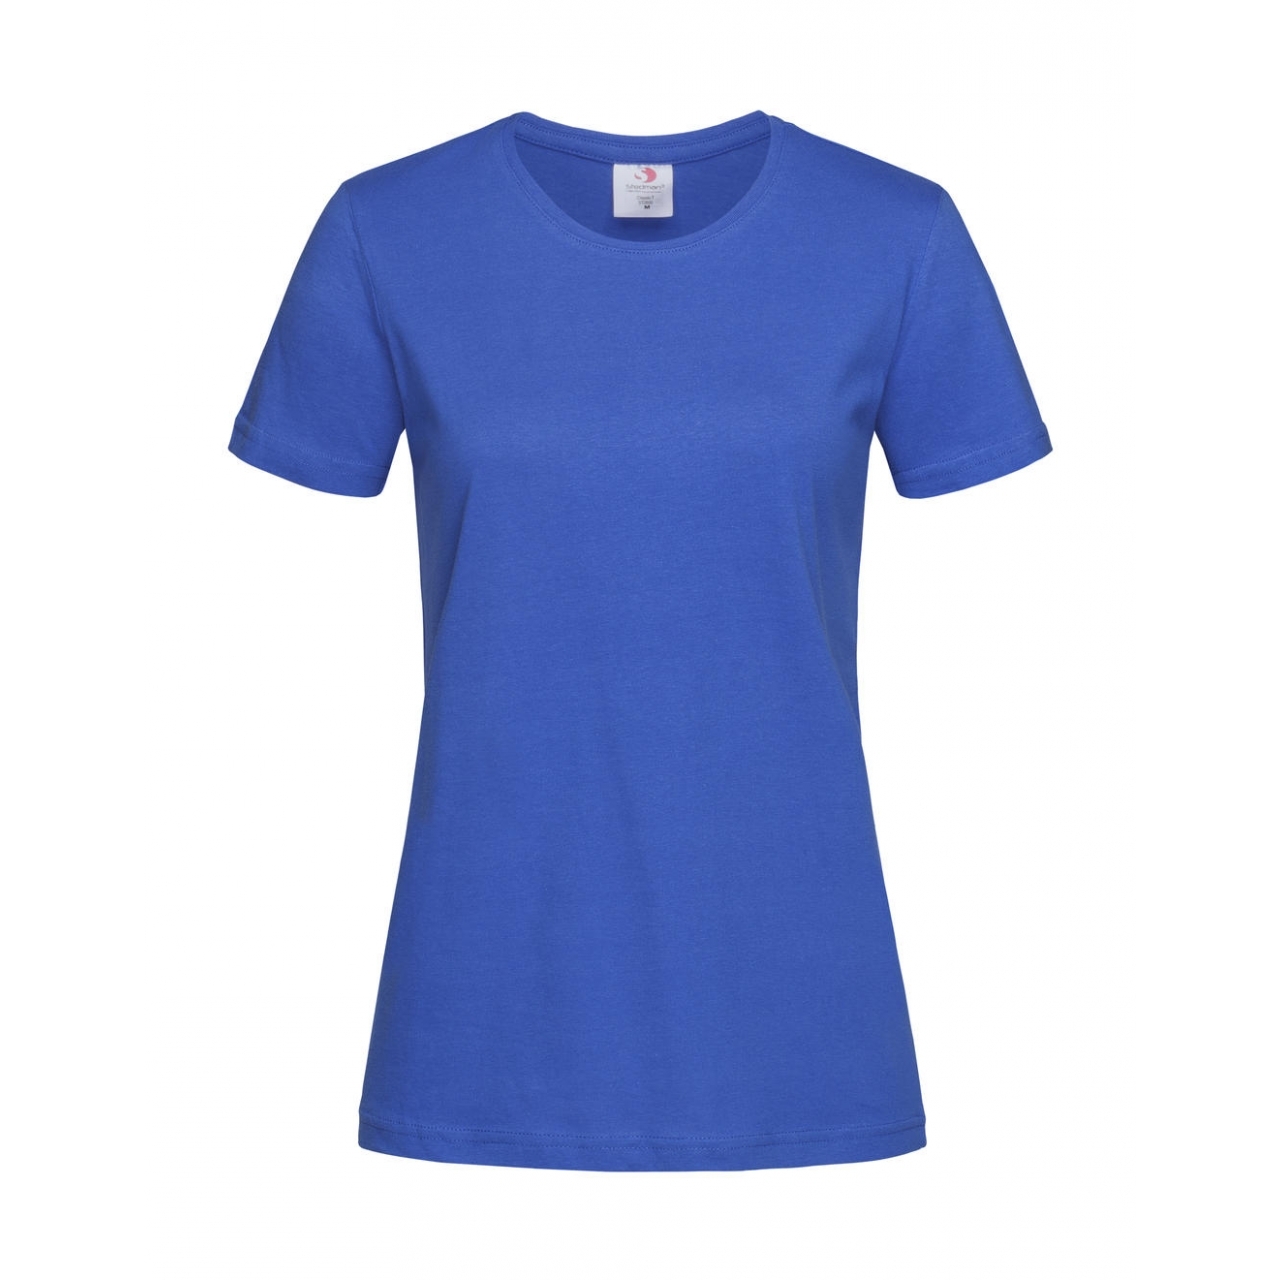 Tričko dámské Stedman Fitted s kulatým výstřihem - modré, XL